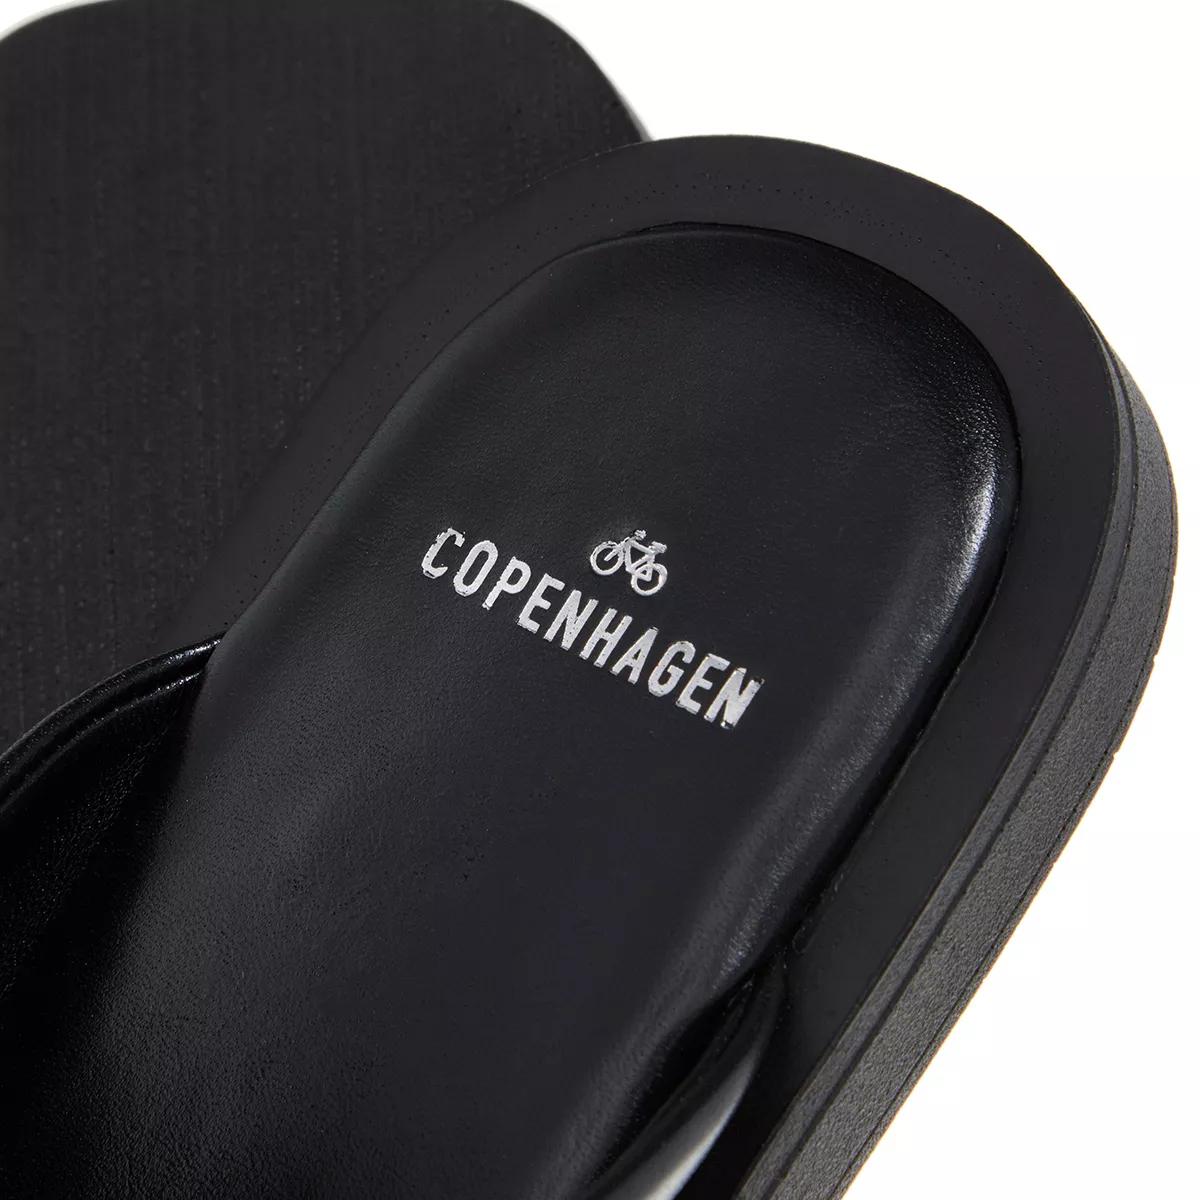 copenhagen sandales, cph790 en noir - pour dames